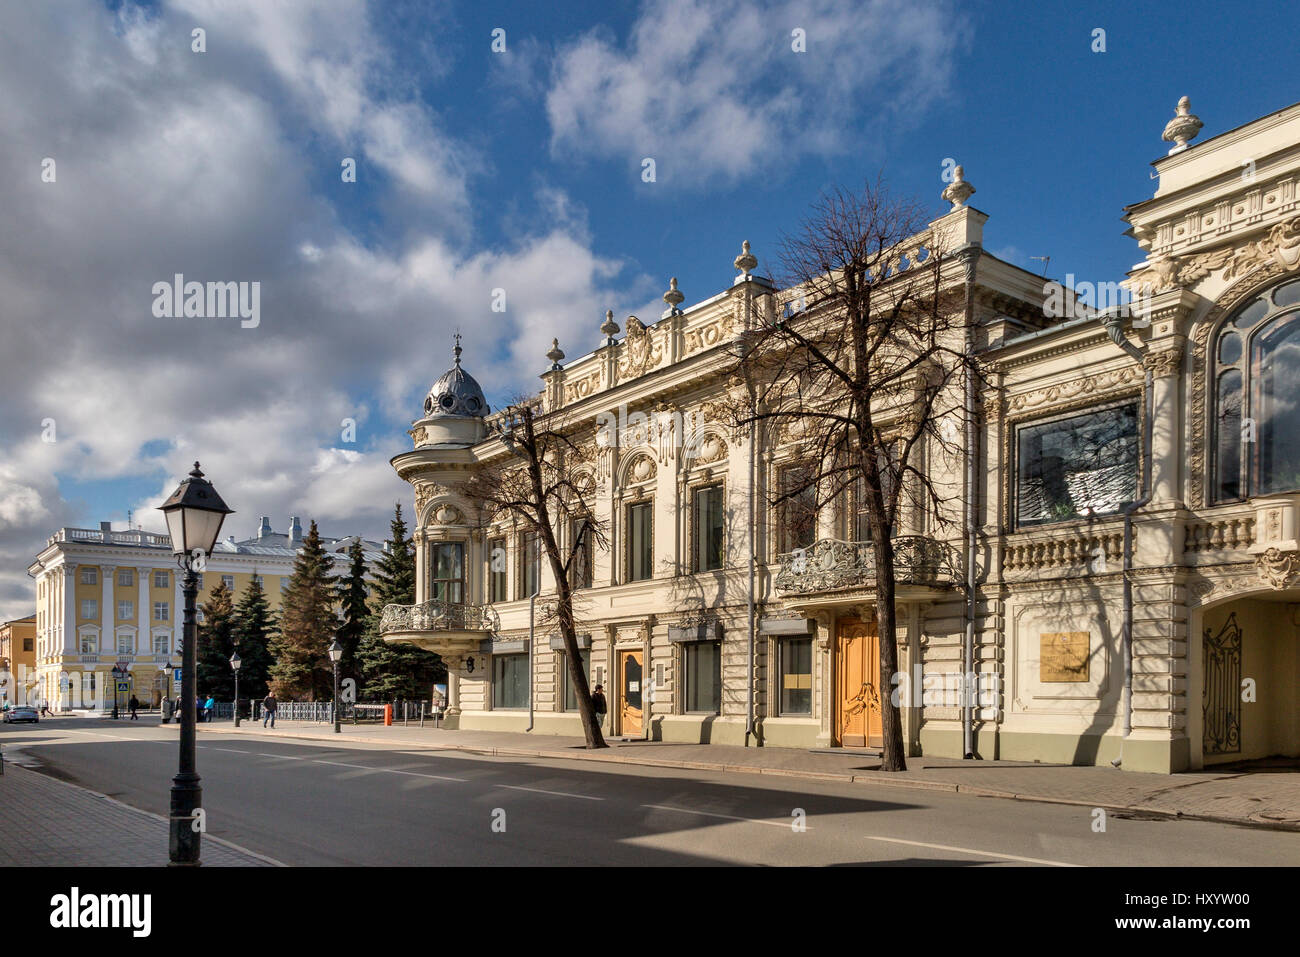 En fin d'après-midi, Kremlin de Kazan Russie République du Tatarstan Banque D'Images